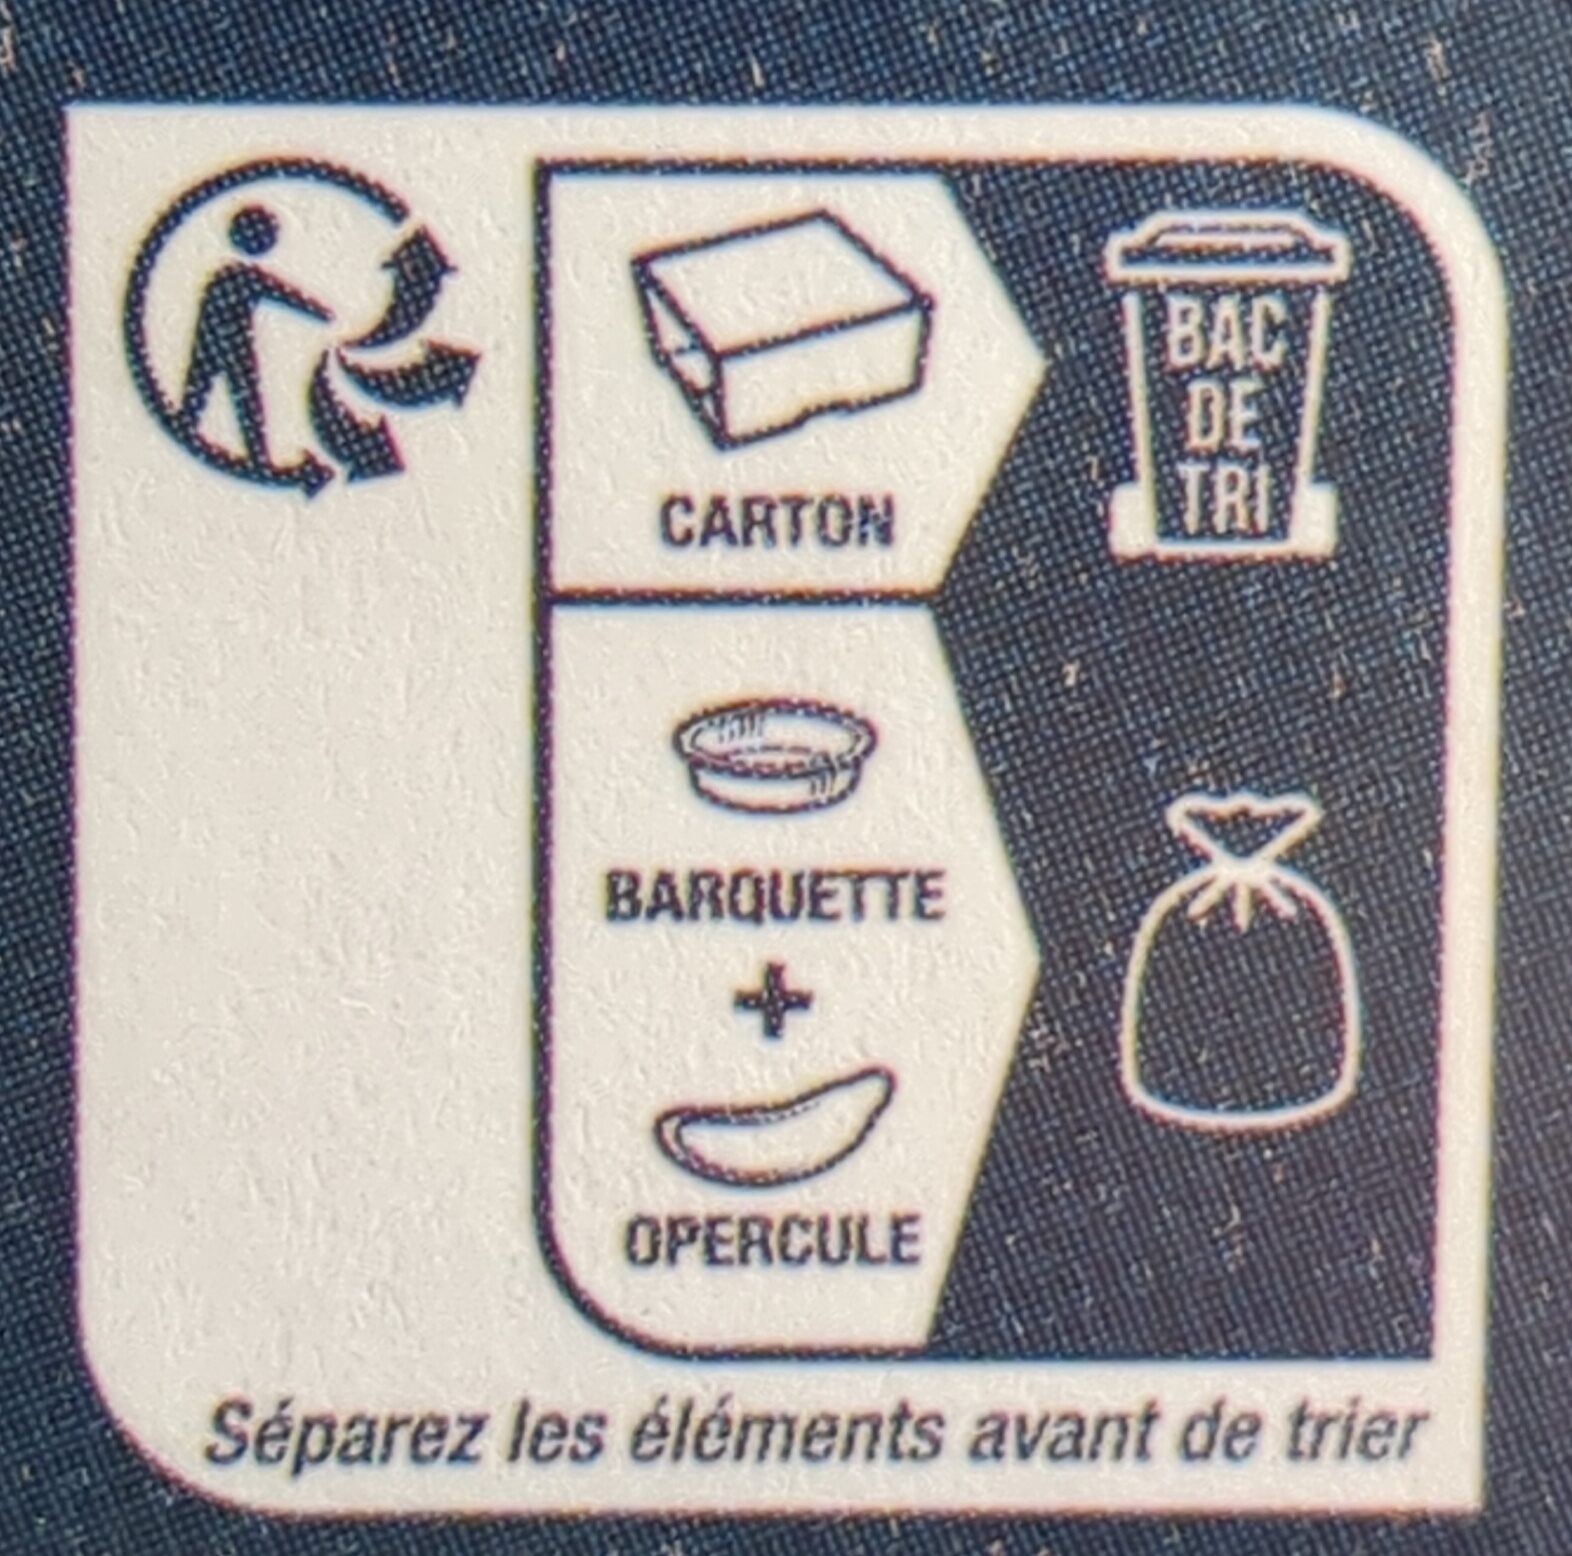 Couscous royal - Instruction de recyclage et/ou informations d'emballage